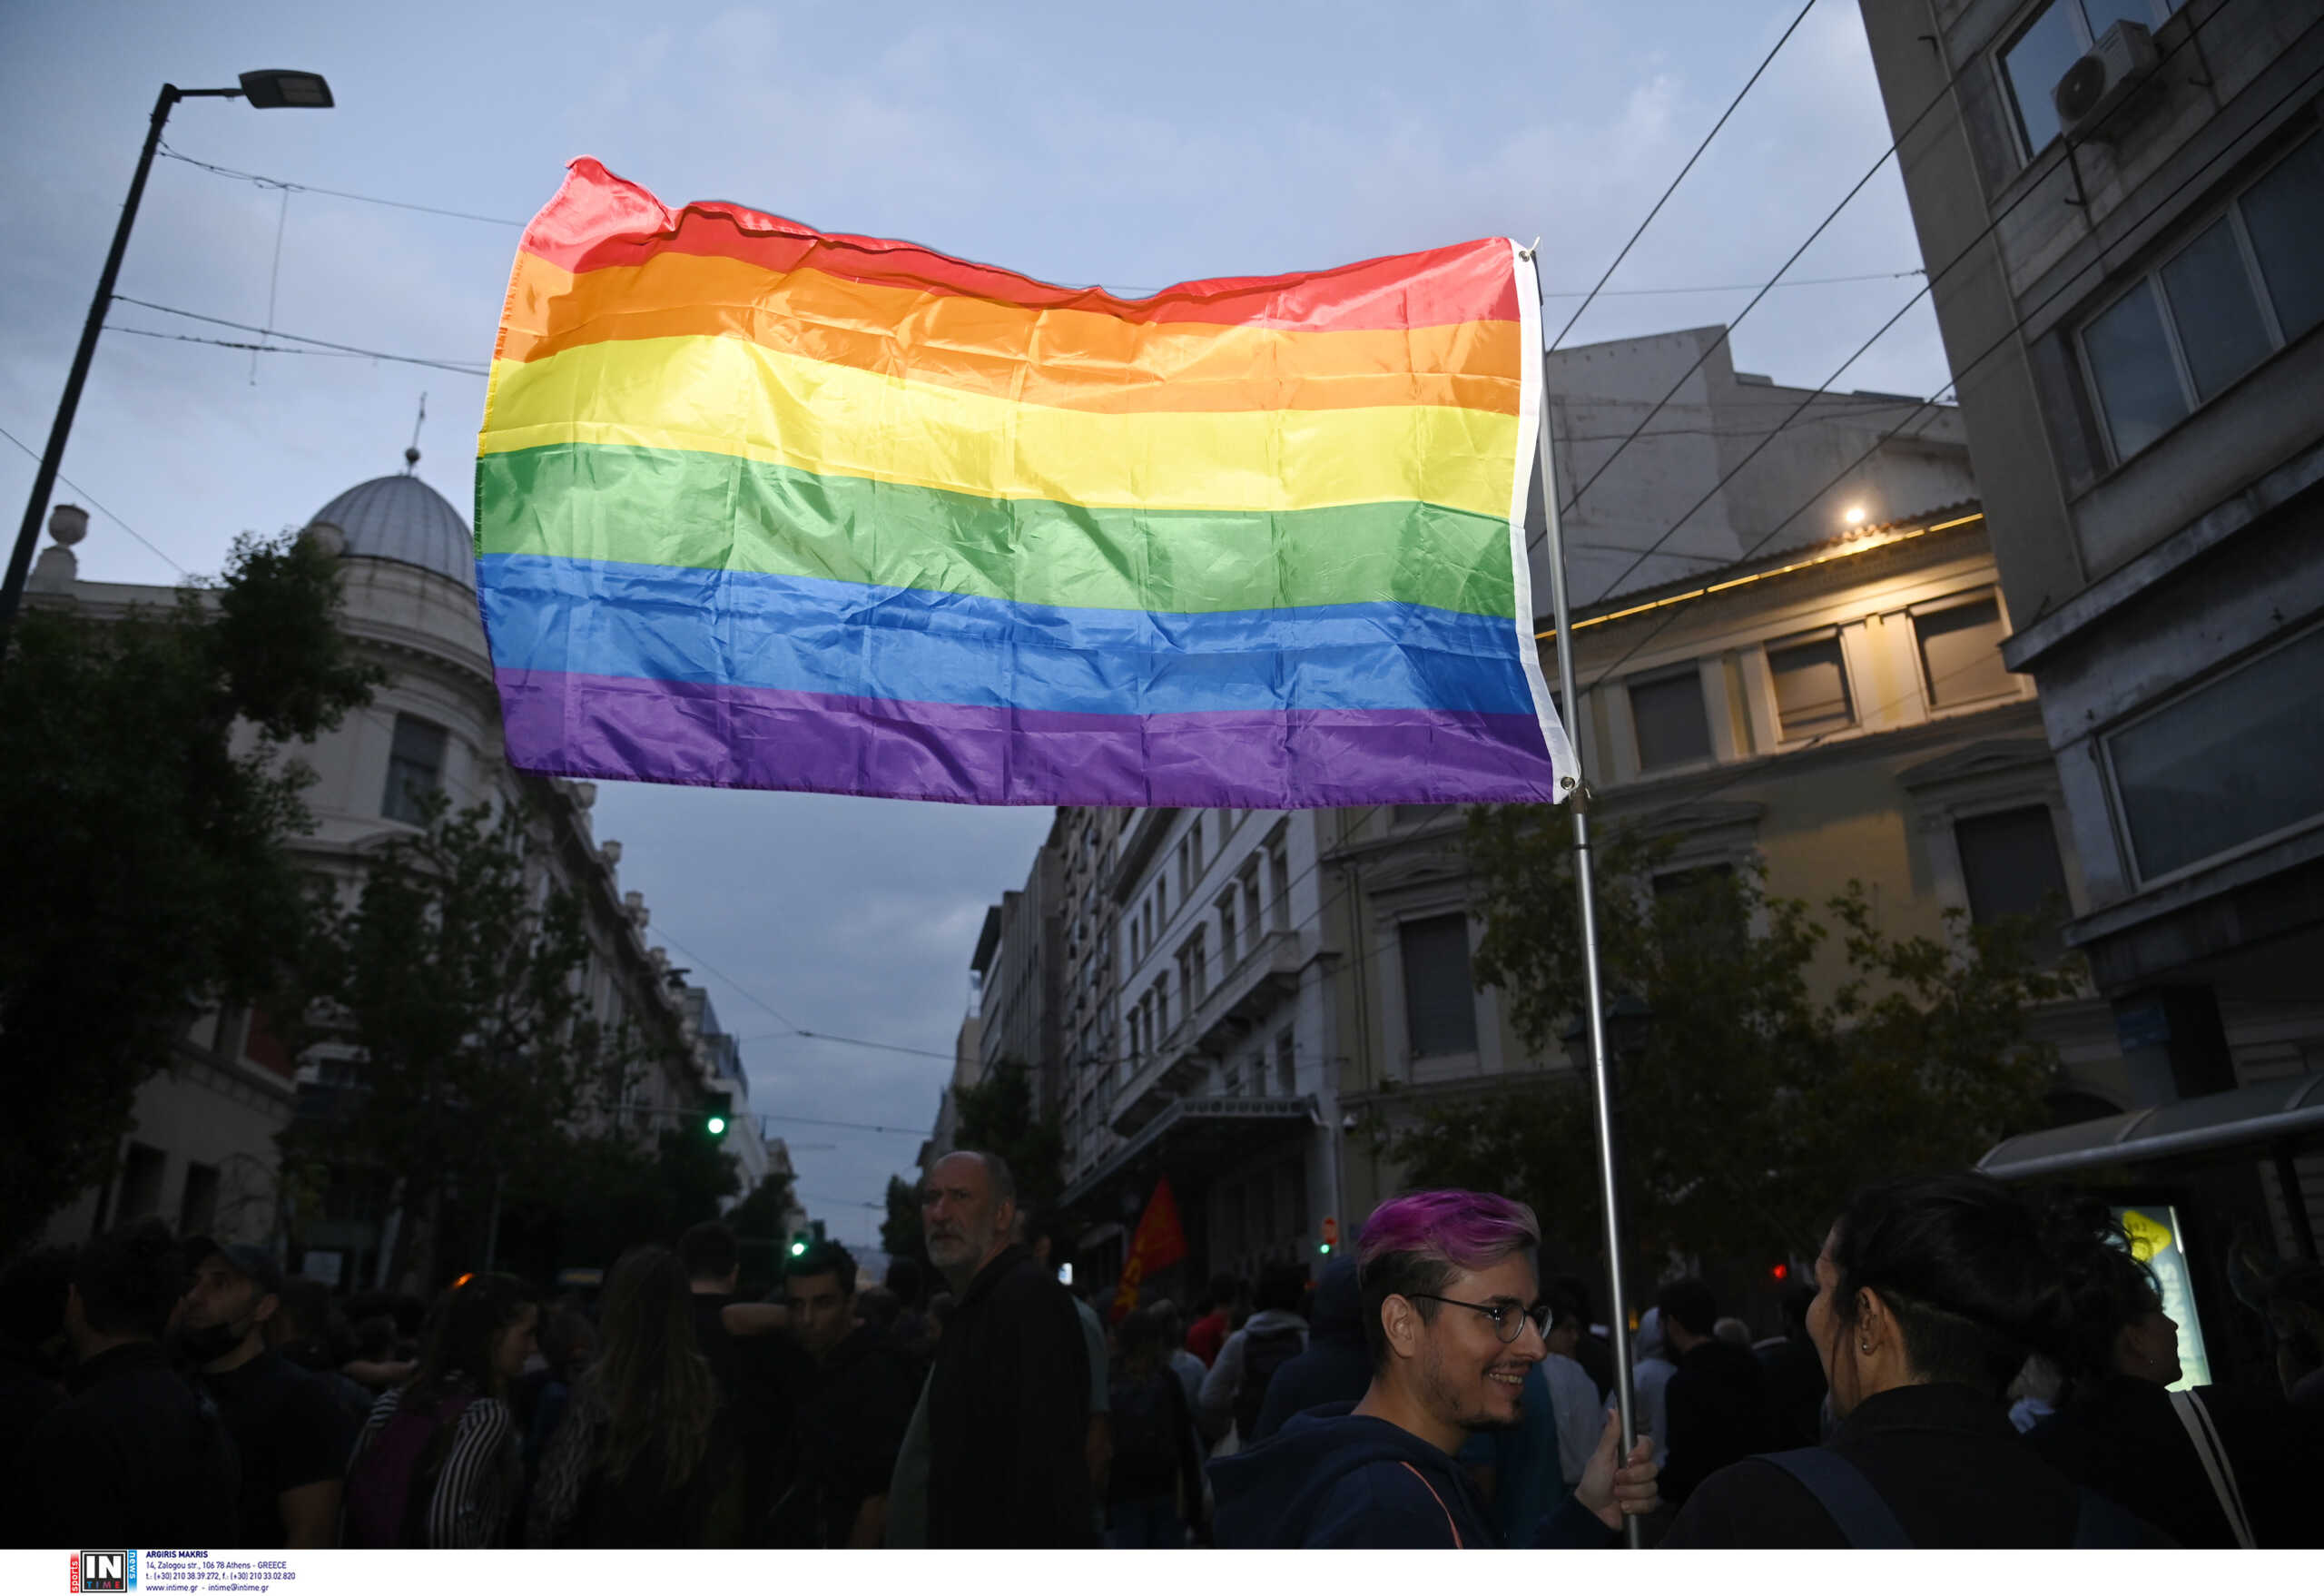 Ισπανία: Δήμαρχος του ακροδεξιού Vox σε μικρή πόλη απαγορεύει τη σημαία ΛΟΑΤΚΙ+ στα δημόσια κτίρια